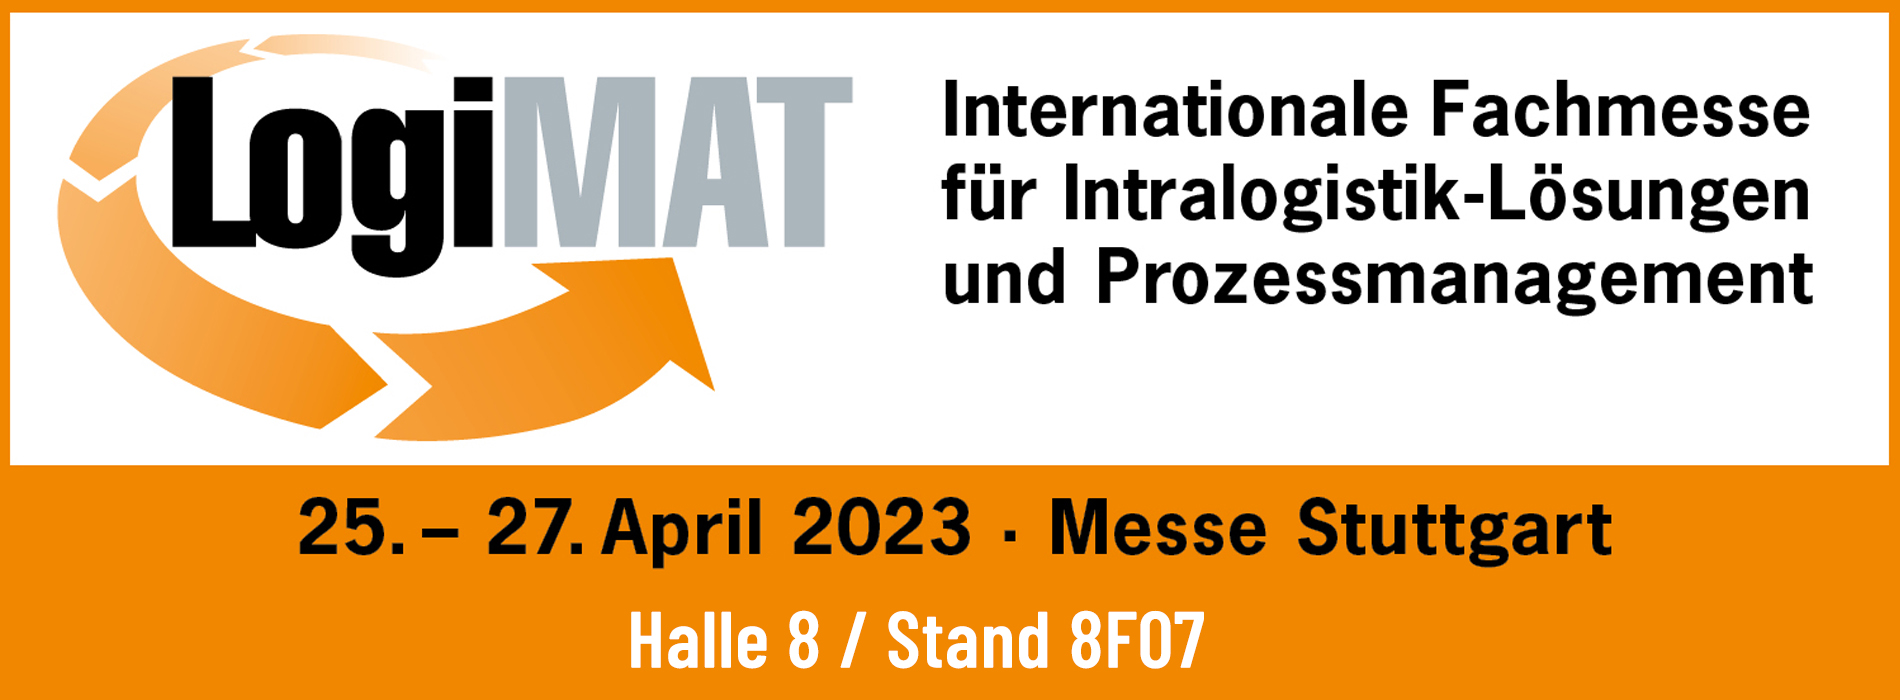 LogiMAT Messe in Stuttgart vom 25 - 27 April 2023 mit Identpro in Halle 8 / Stand 8F07